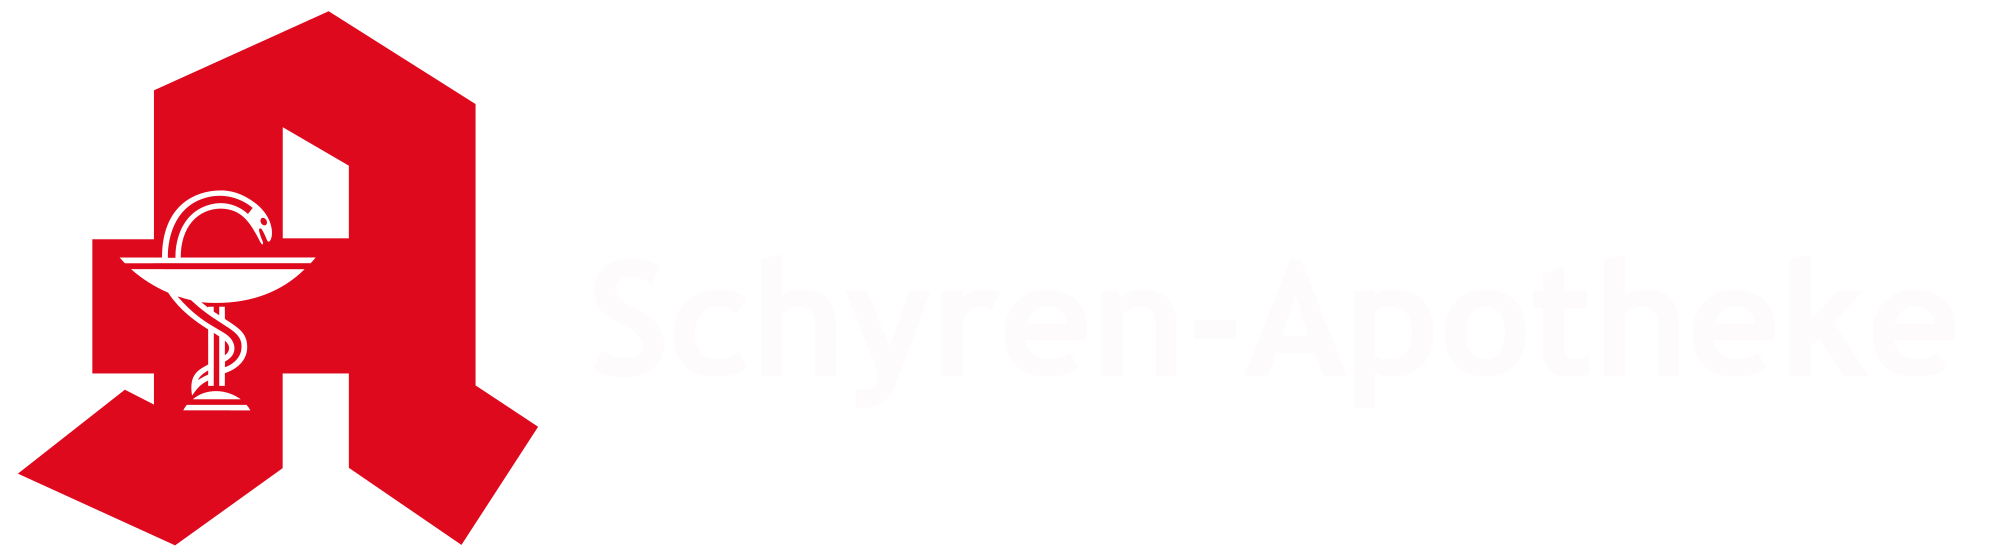 Schyren-apotheke logo - footer logo